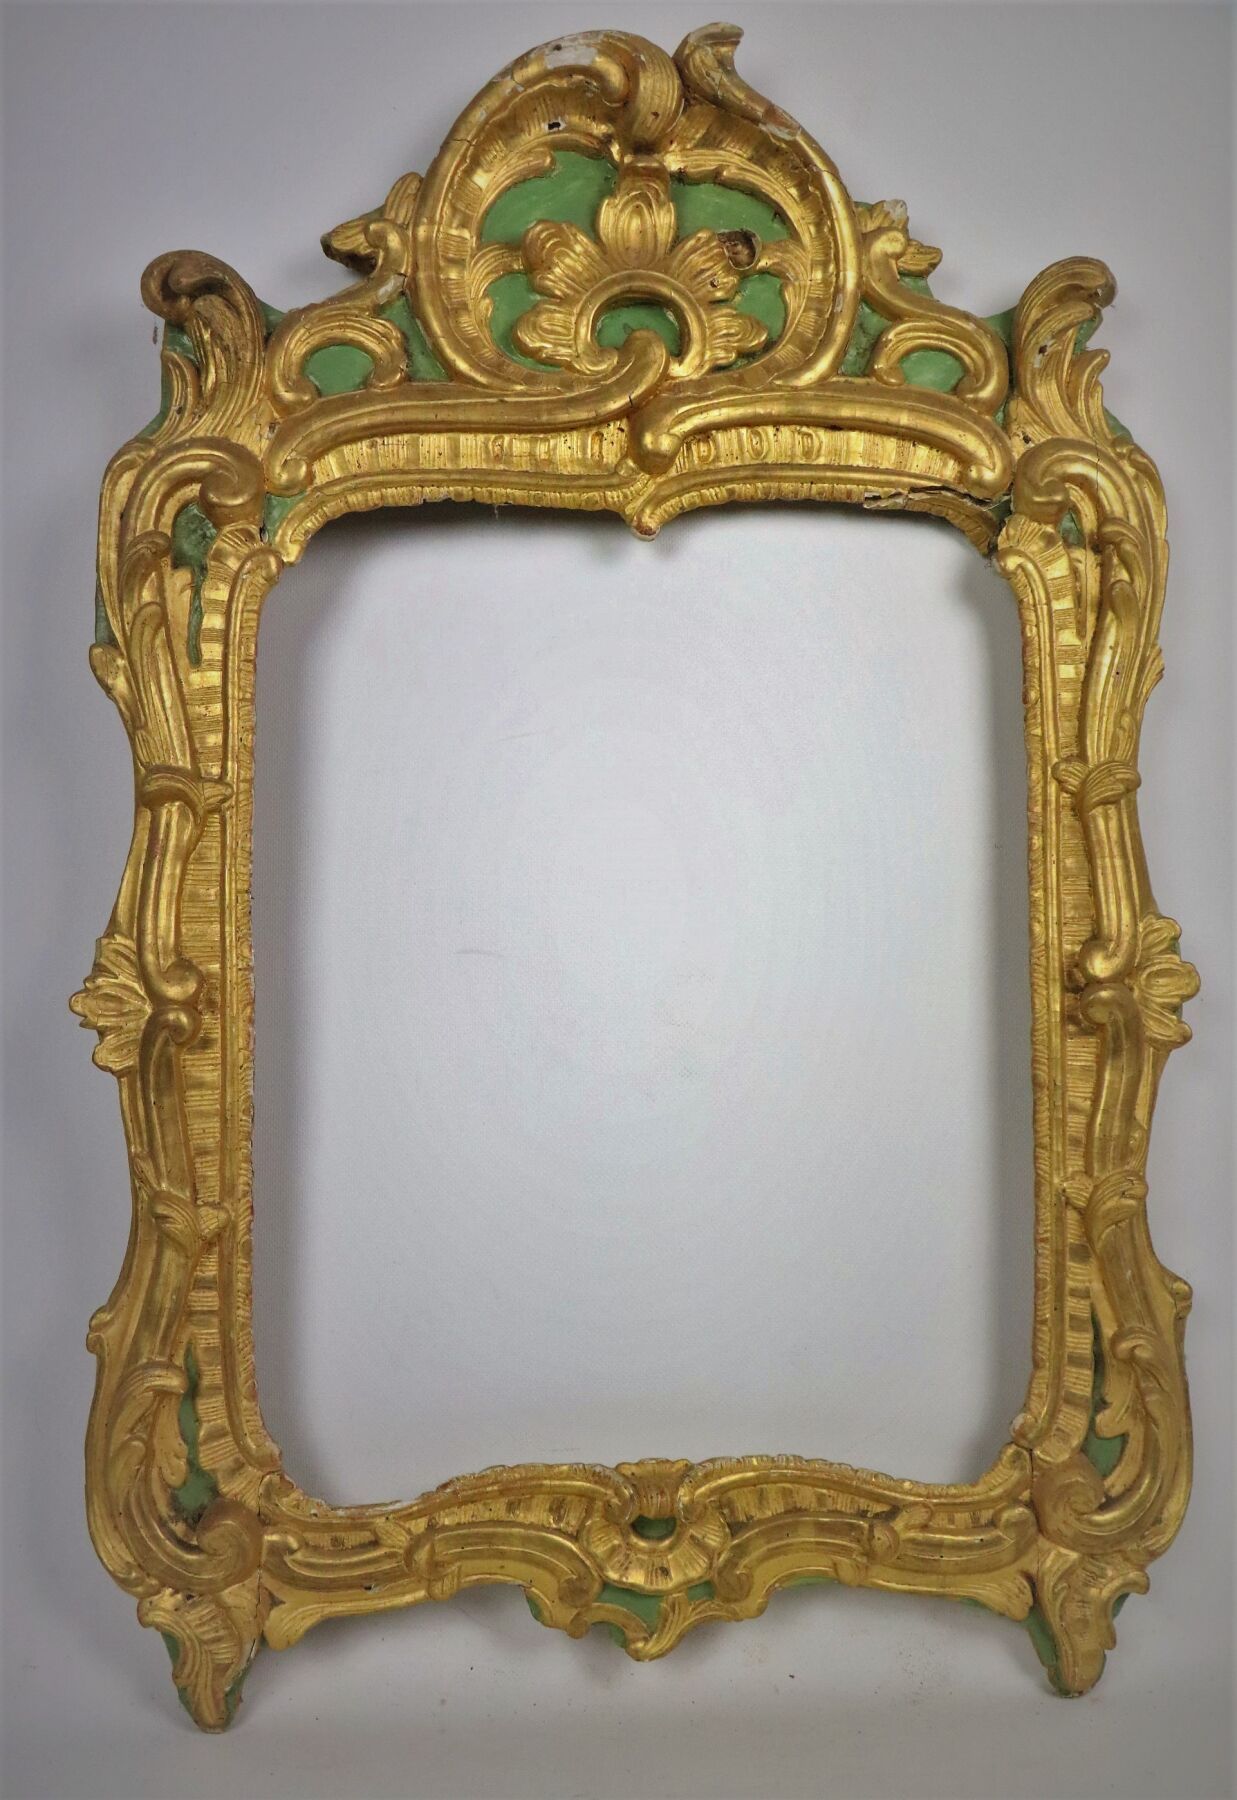 Null 镜框有模制木头和绿漆镀金灰泥的rocaille装饰。
18世纪。
高_82厘米，宽_52.8厘米，镜框顶部和右侧有事故和轻微损坏。